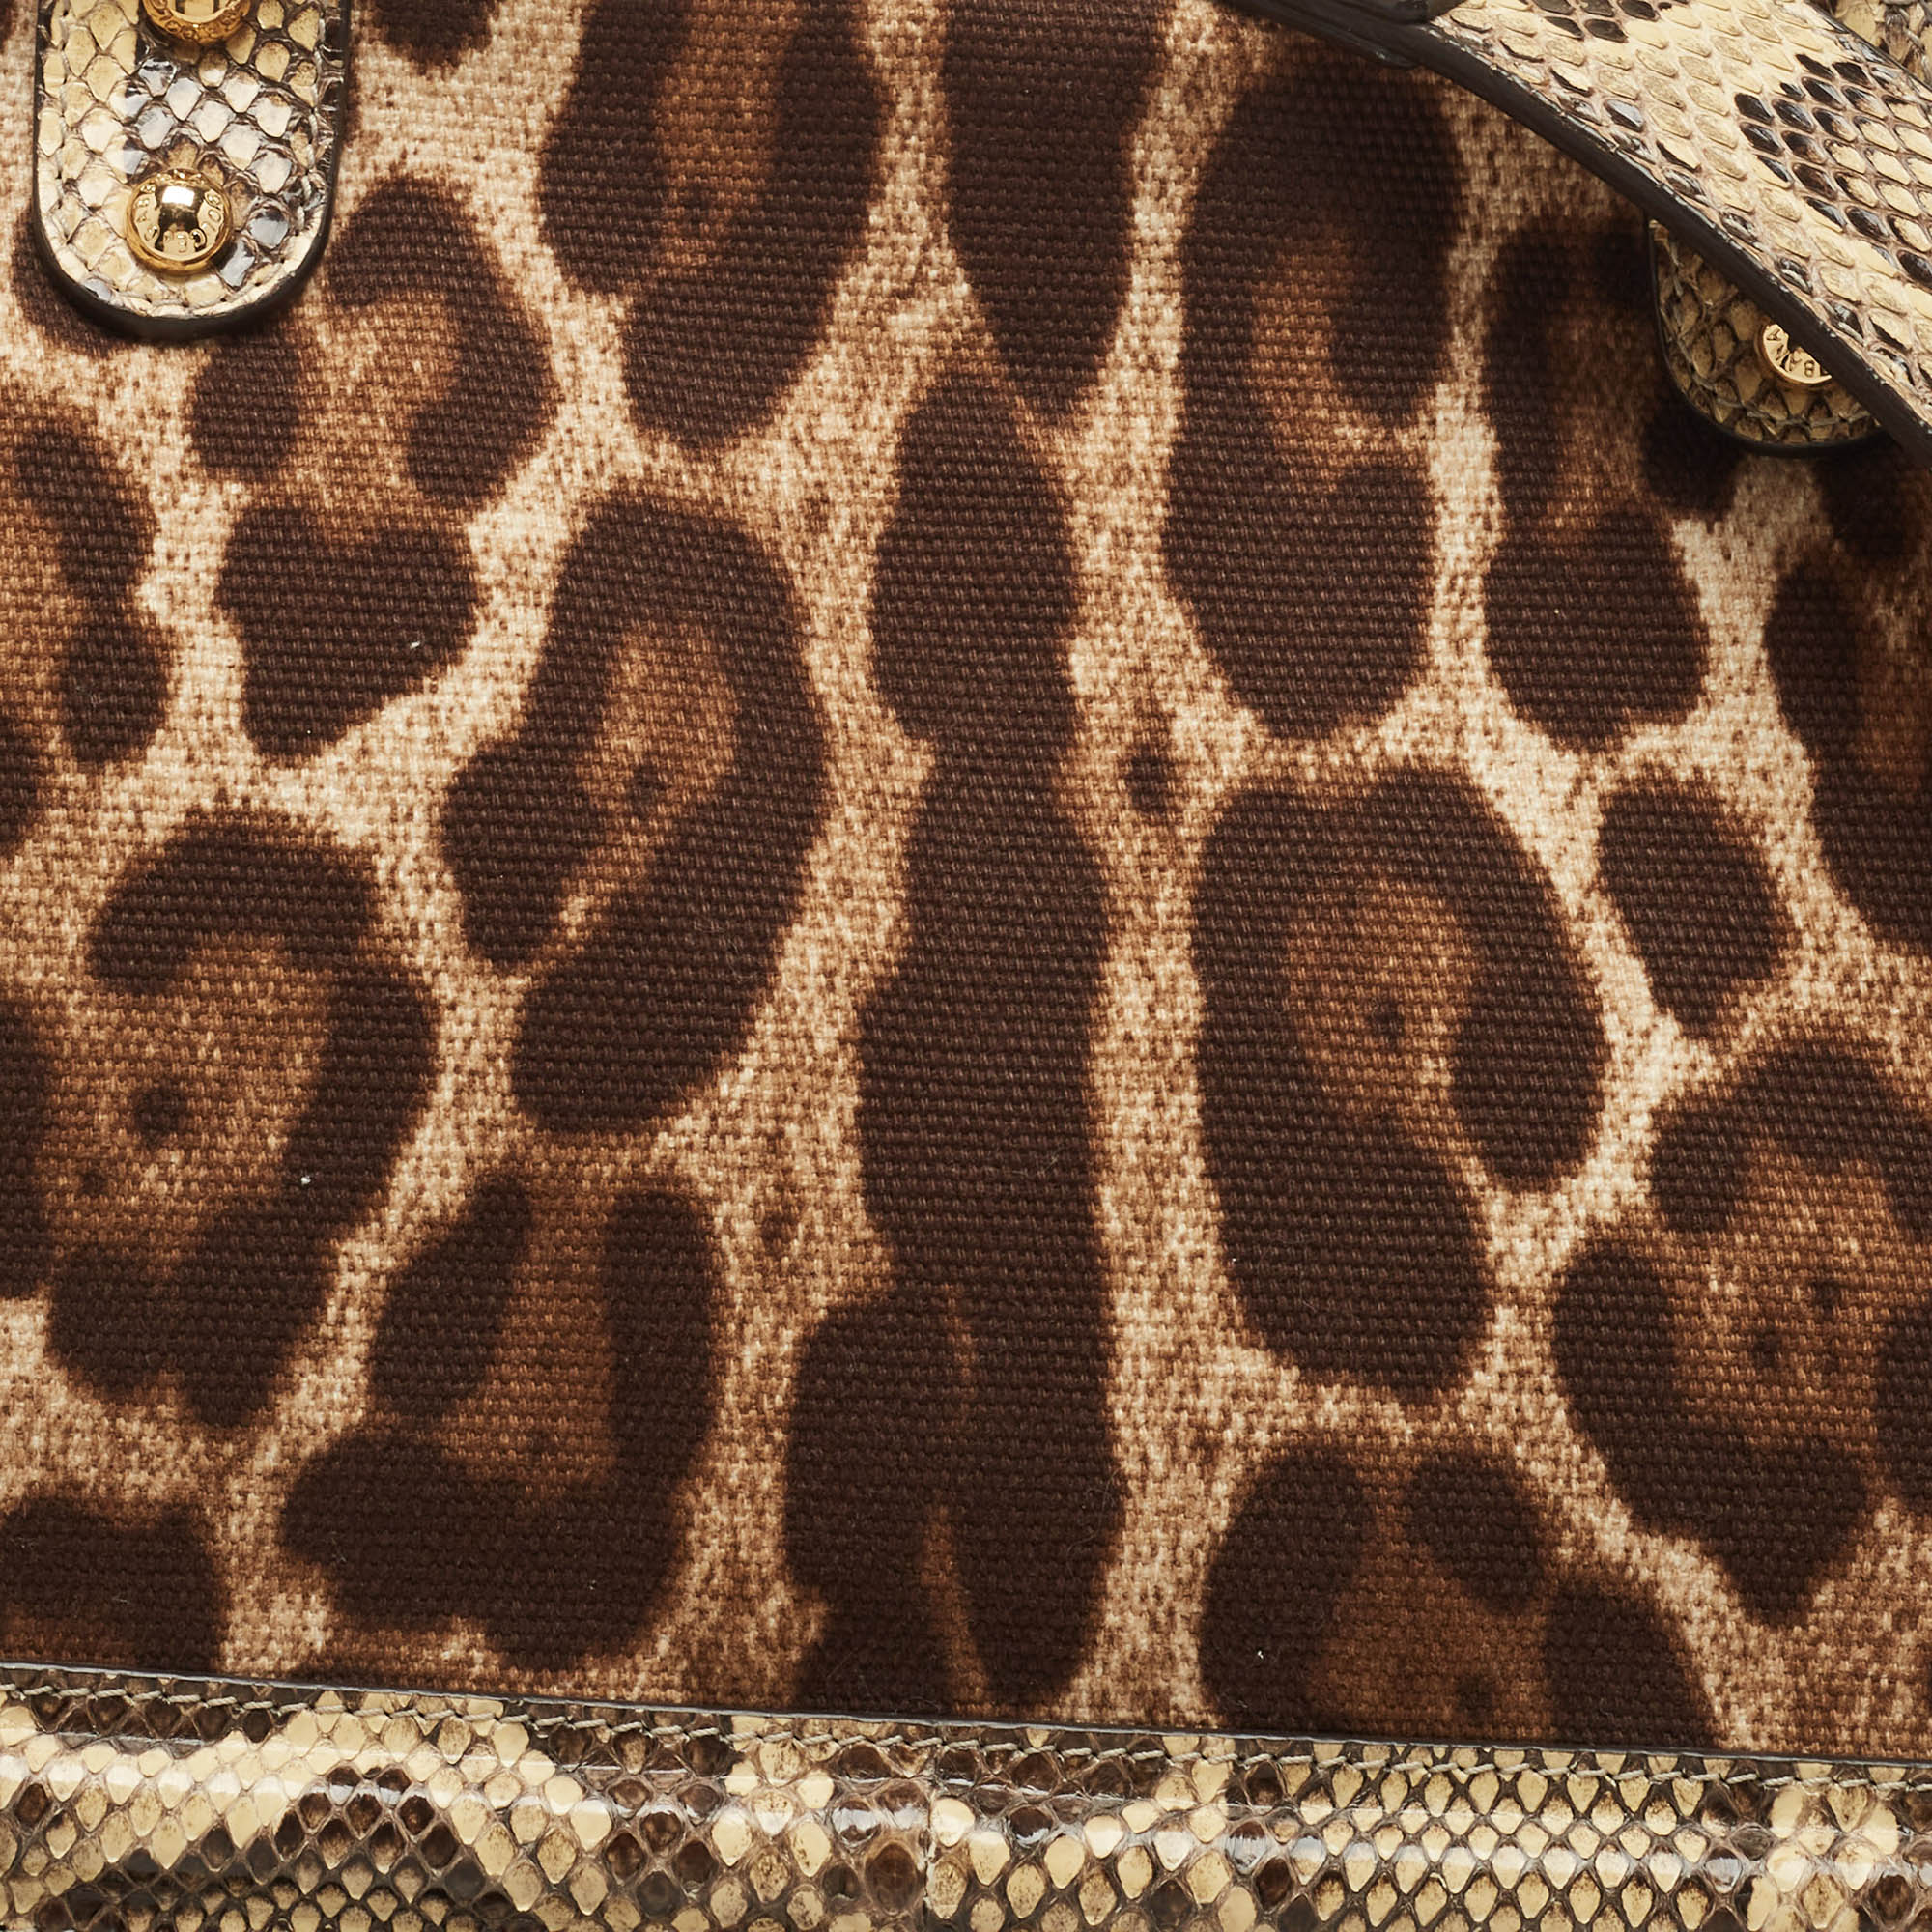 Dolce & Gabbana Brown Leopard Print Canvas & Python Skin Leather Sicily Shoulder Bag